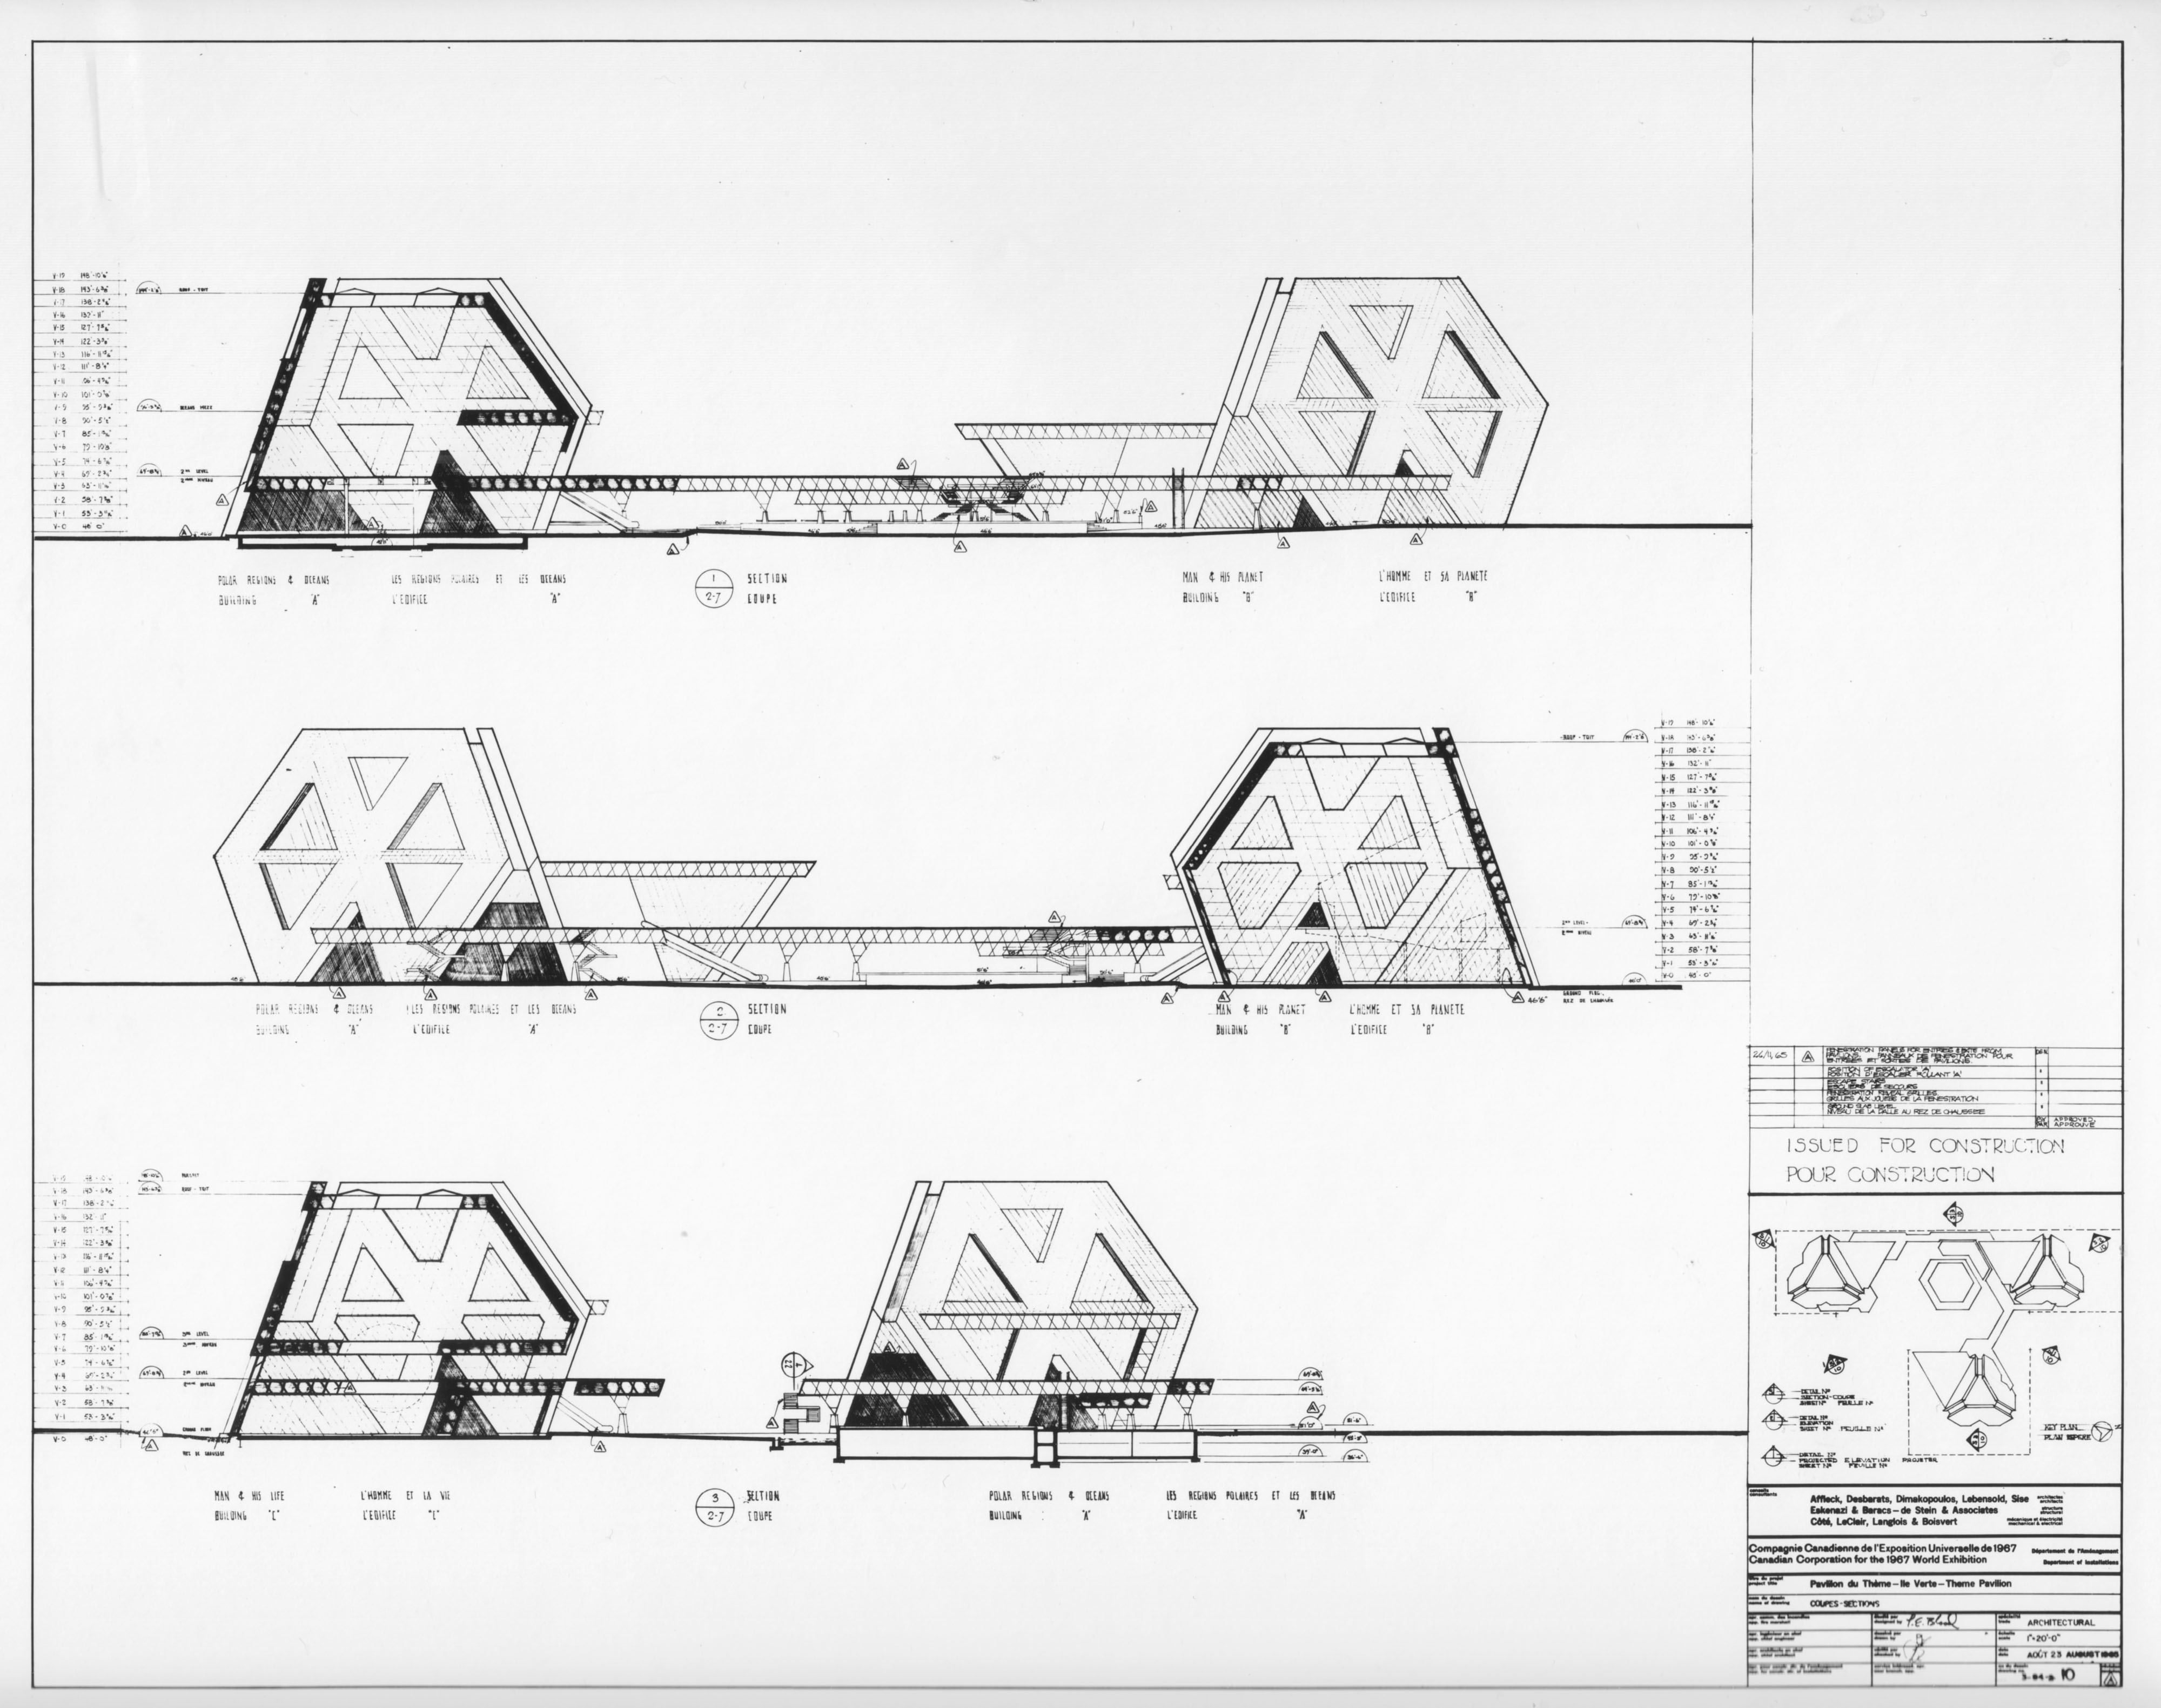 Plan d'un pavillon thématique par la firme Affleck, Desbarats, Dimakopoulos, Lebensold & Sise